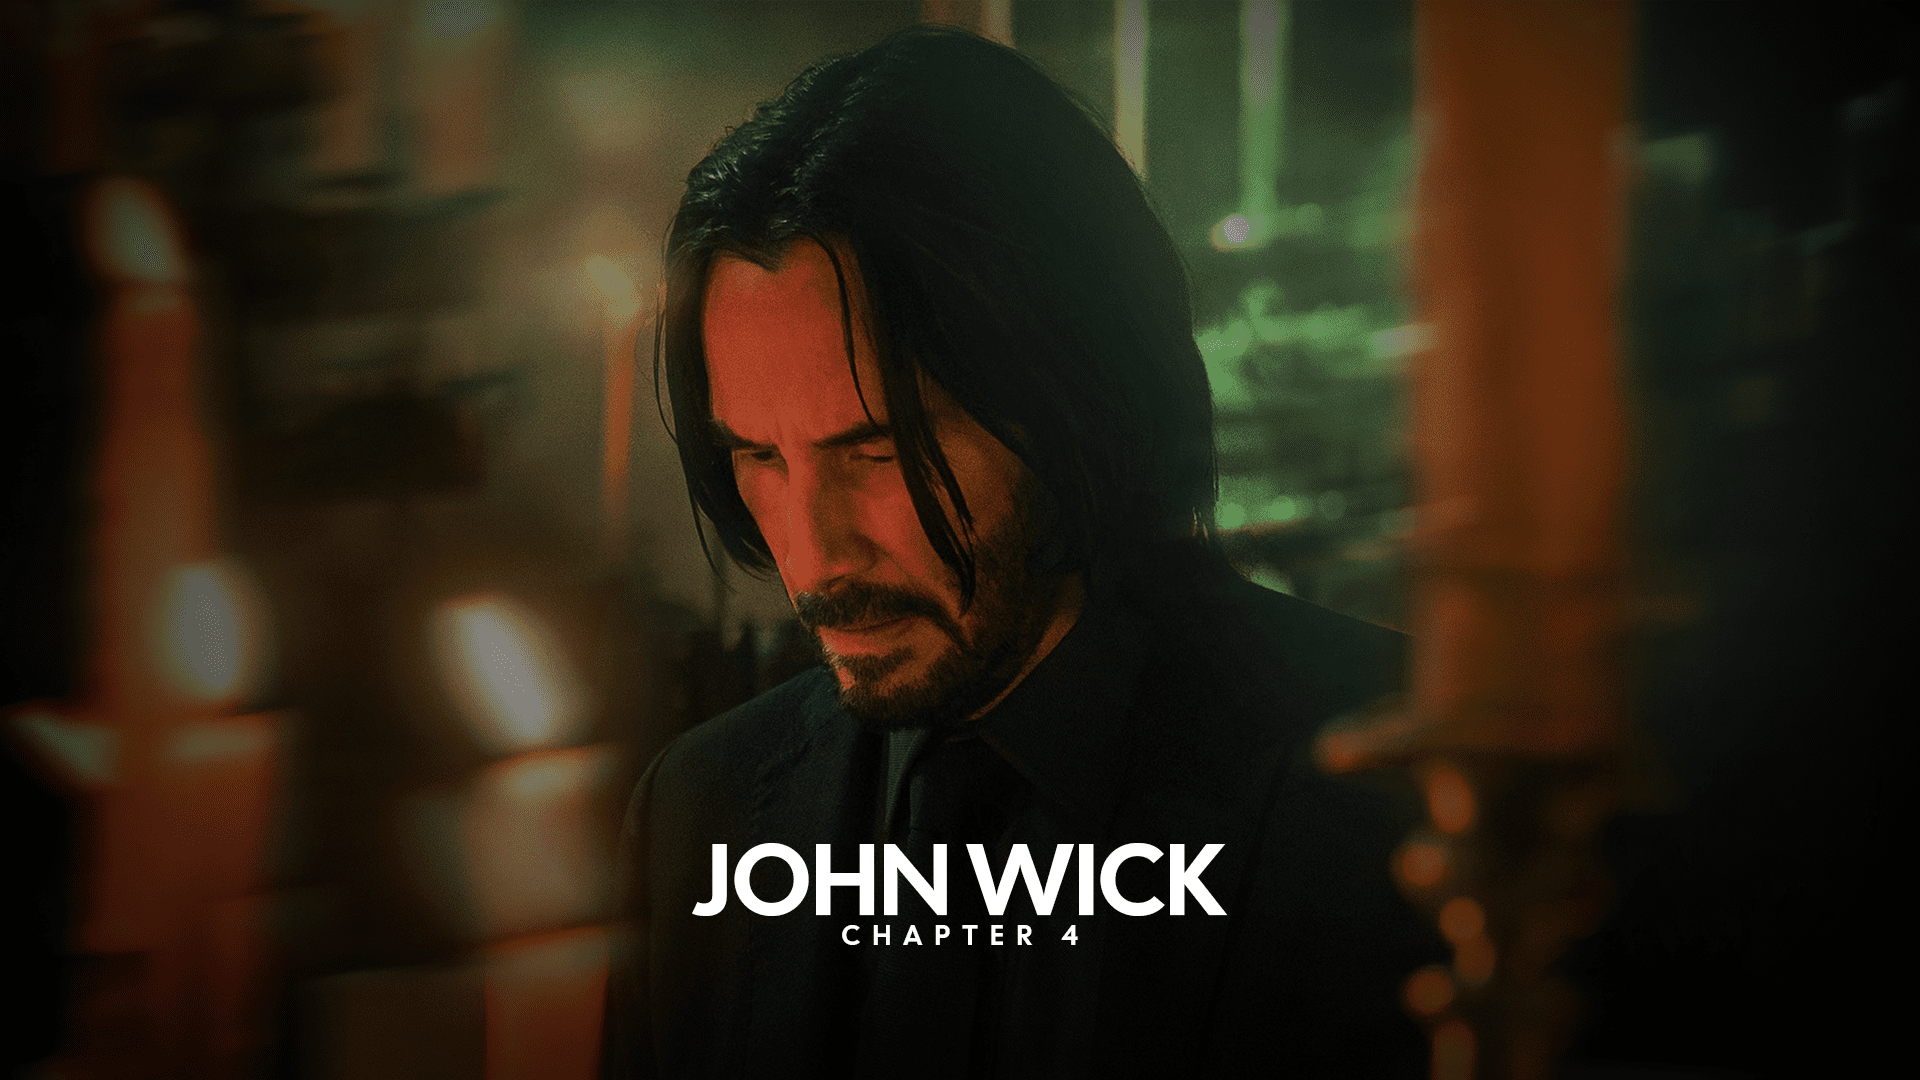 John Wick Chapter 4 Trailer Breakdown